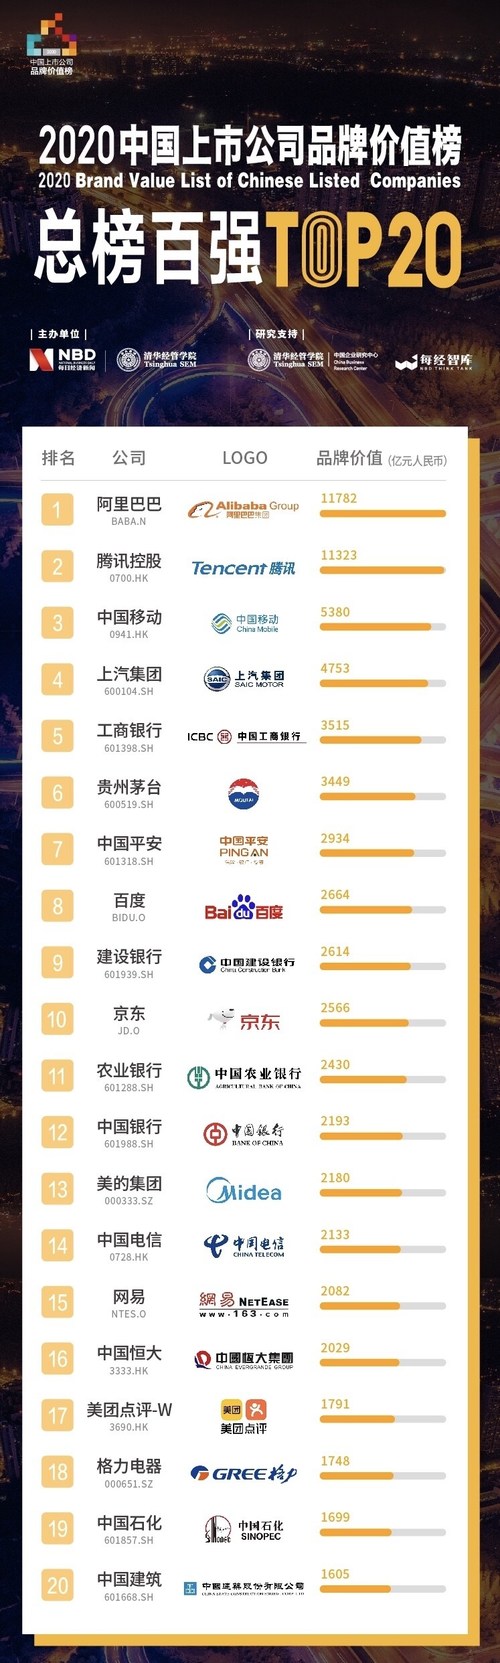 As 50 principais empresas chinesas listadas por valor da marca no exterior (20 principais) (PRNewsfoto/National Business Daily)